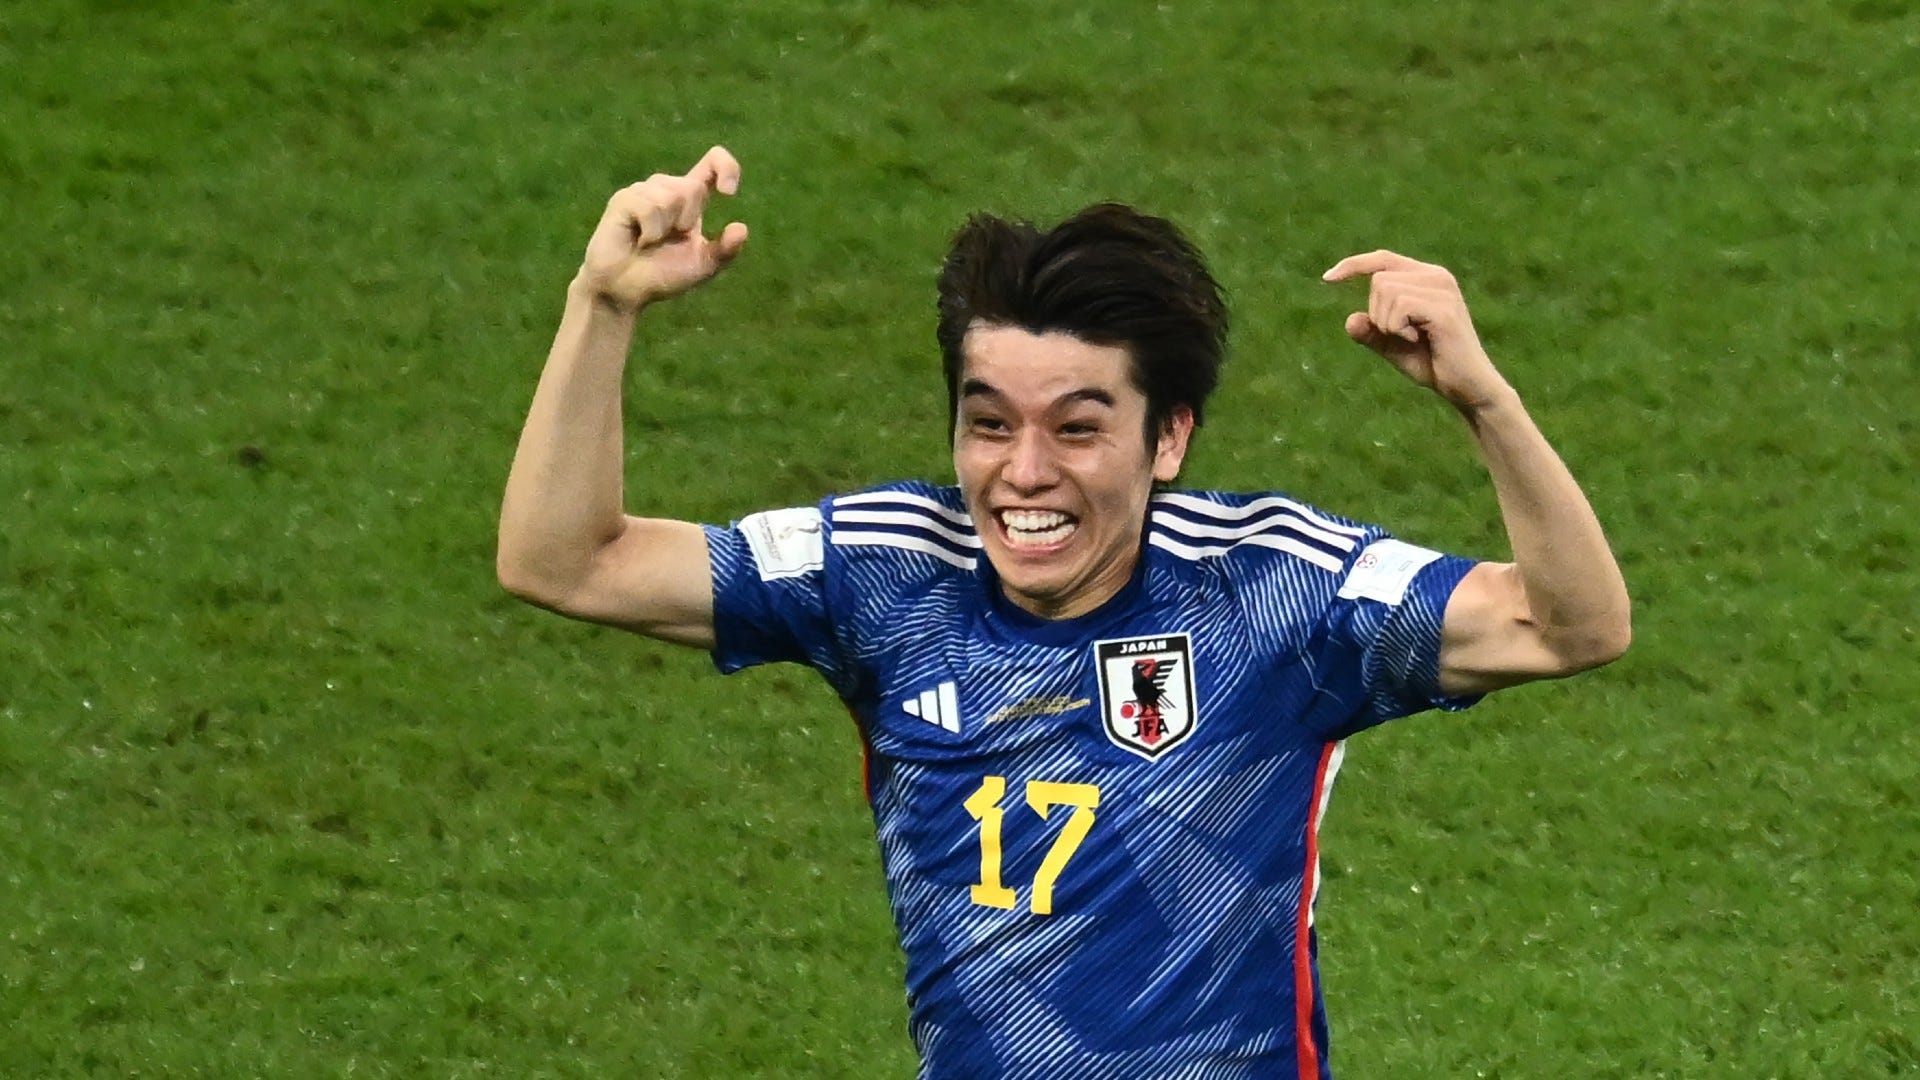 決勝t進出の立役者 田中碧 クロアチア戦で警戒する チームの核 とは 世界的に見てもトップ Goal Com 日本